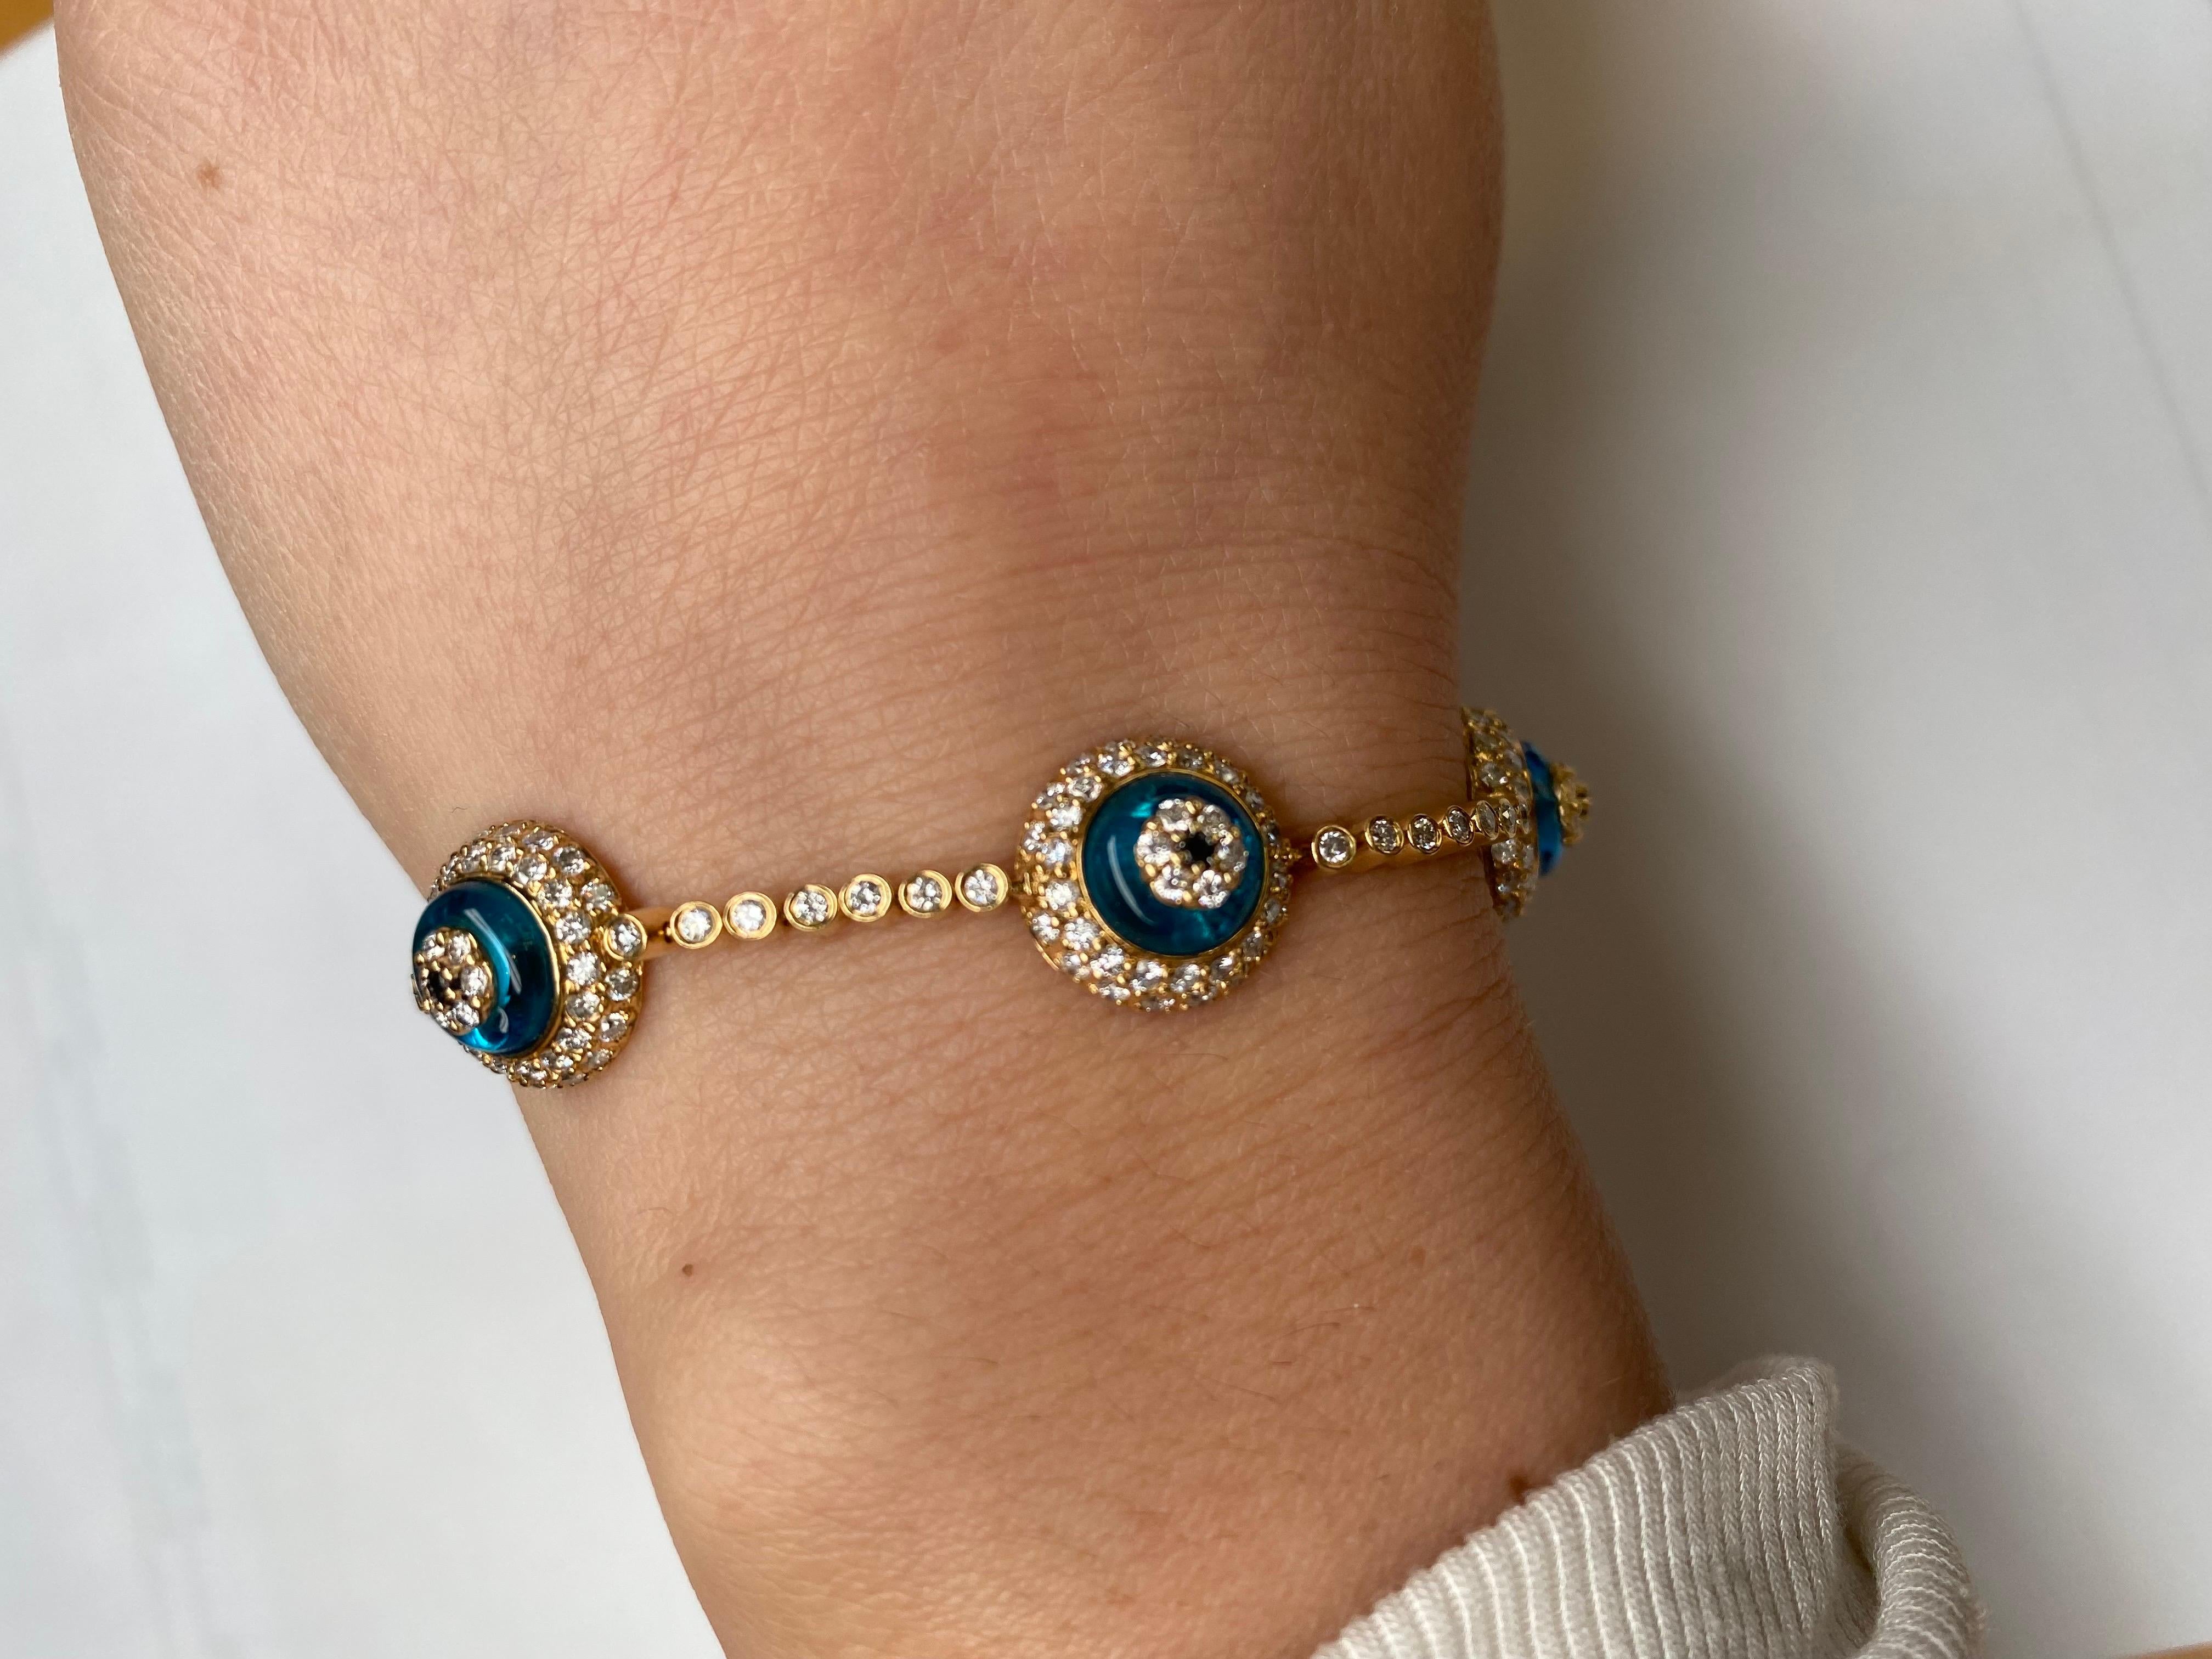 evil eye bracelets with diamonds